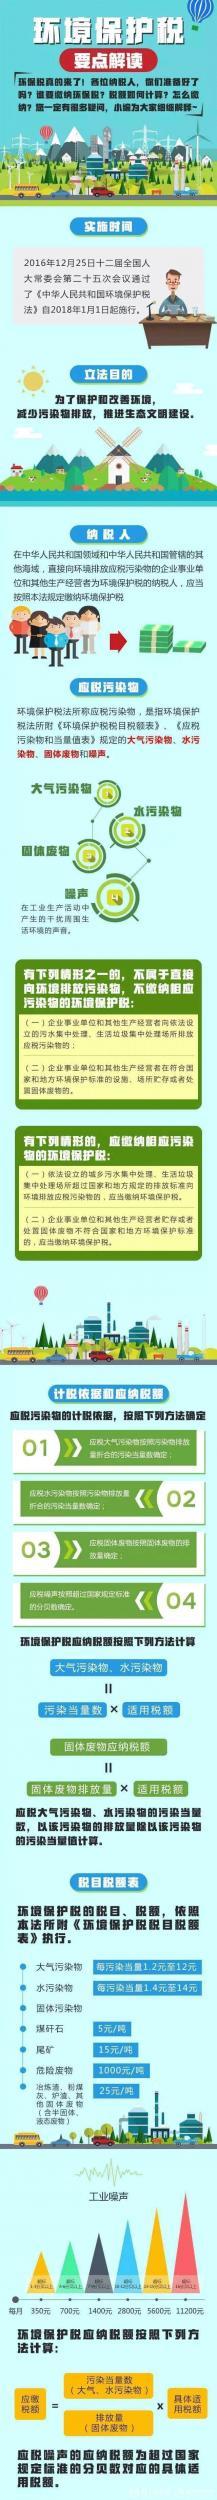 环境保护税开征 上海开出中国首张税票约8800元